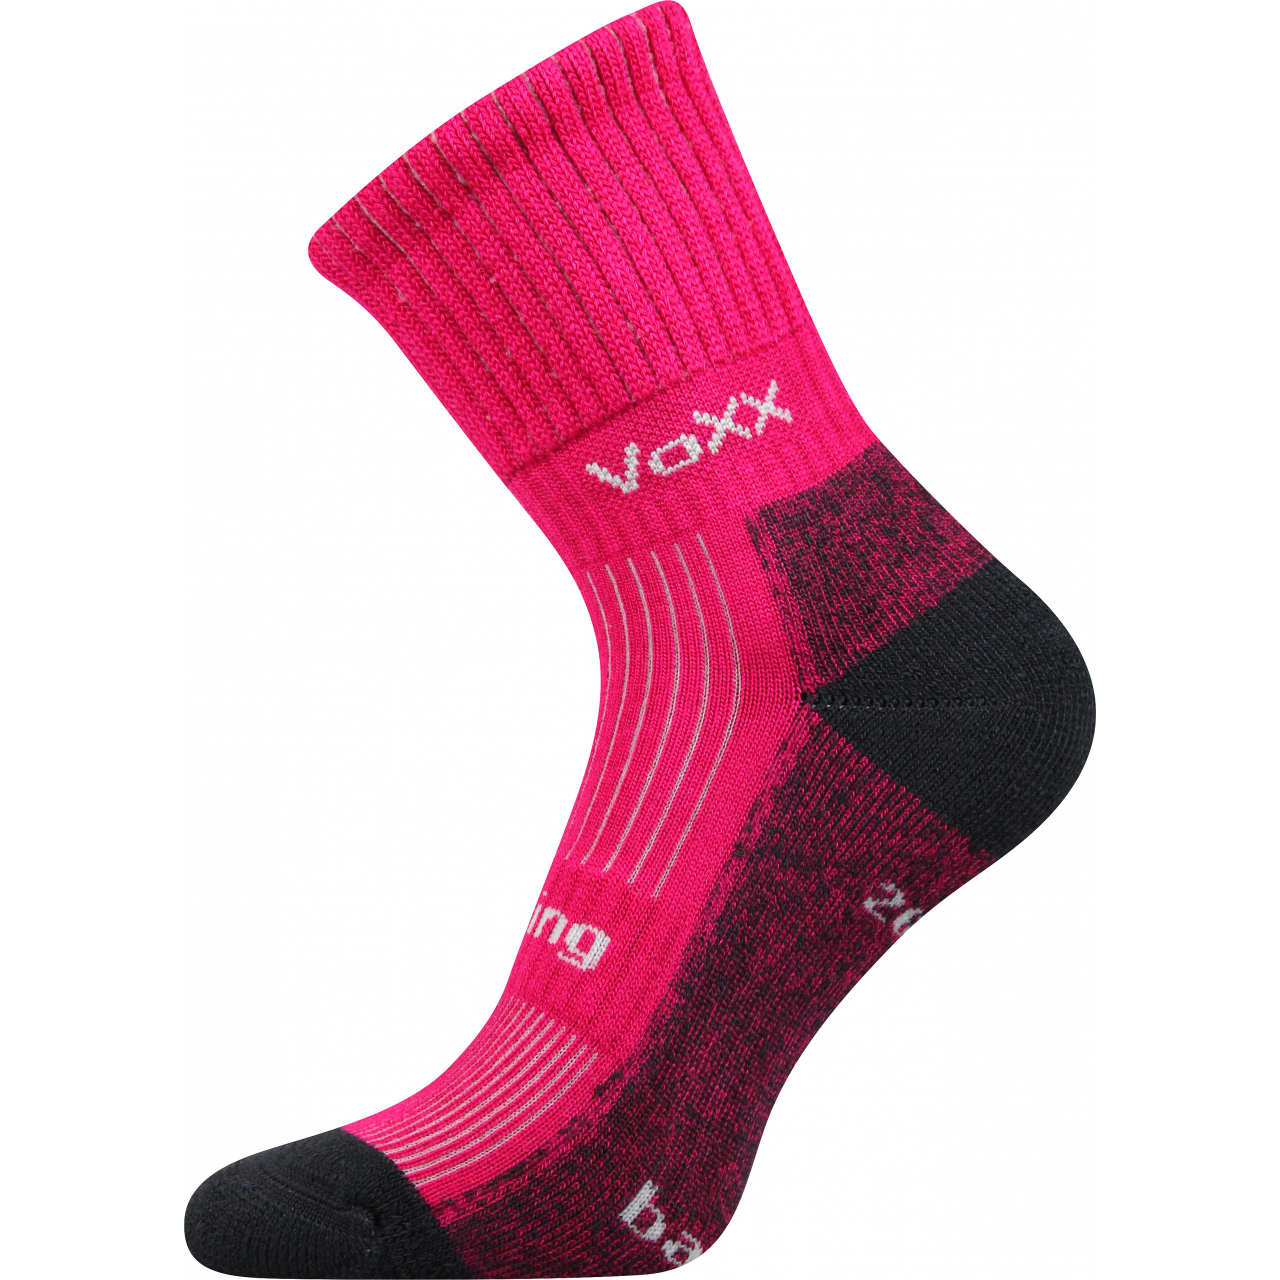 Ponožky sportovní unisex Voxx Bomber - tmavě růžové, 39-42